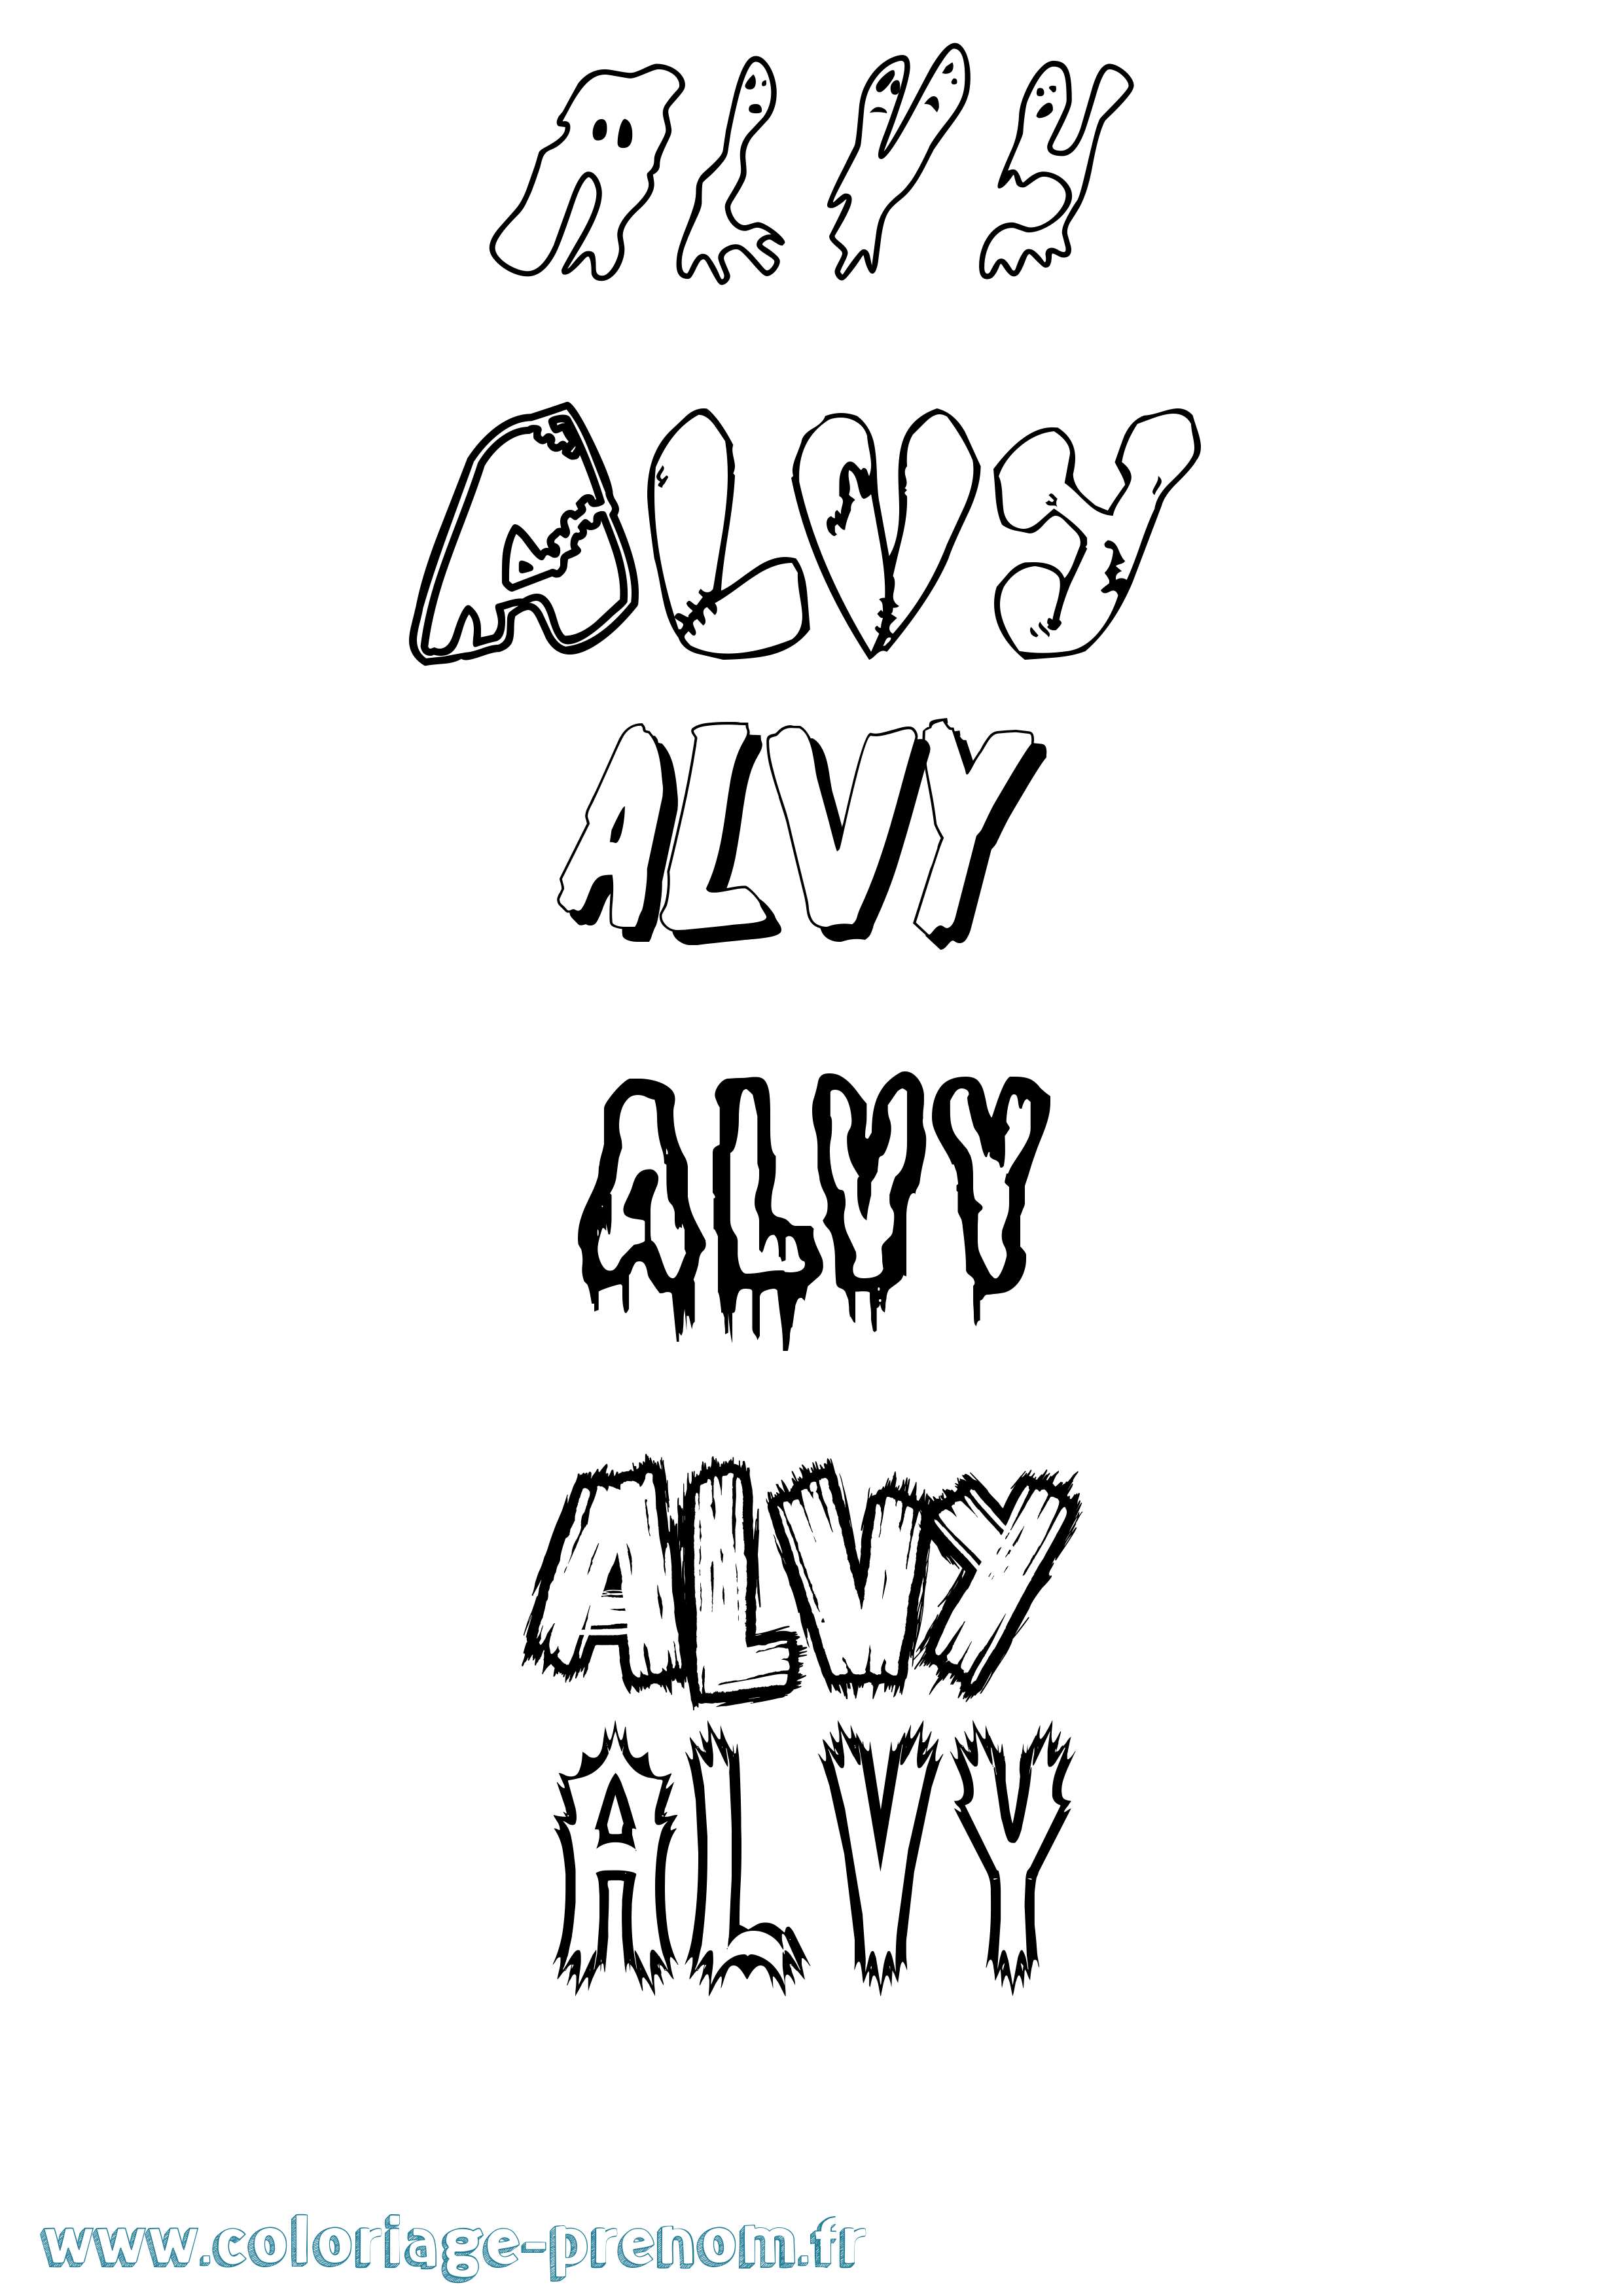 Coloriage prénom Alvy Frisson